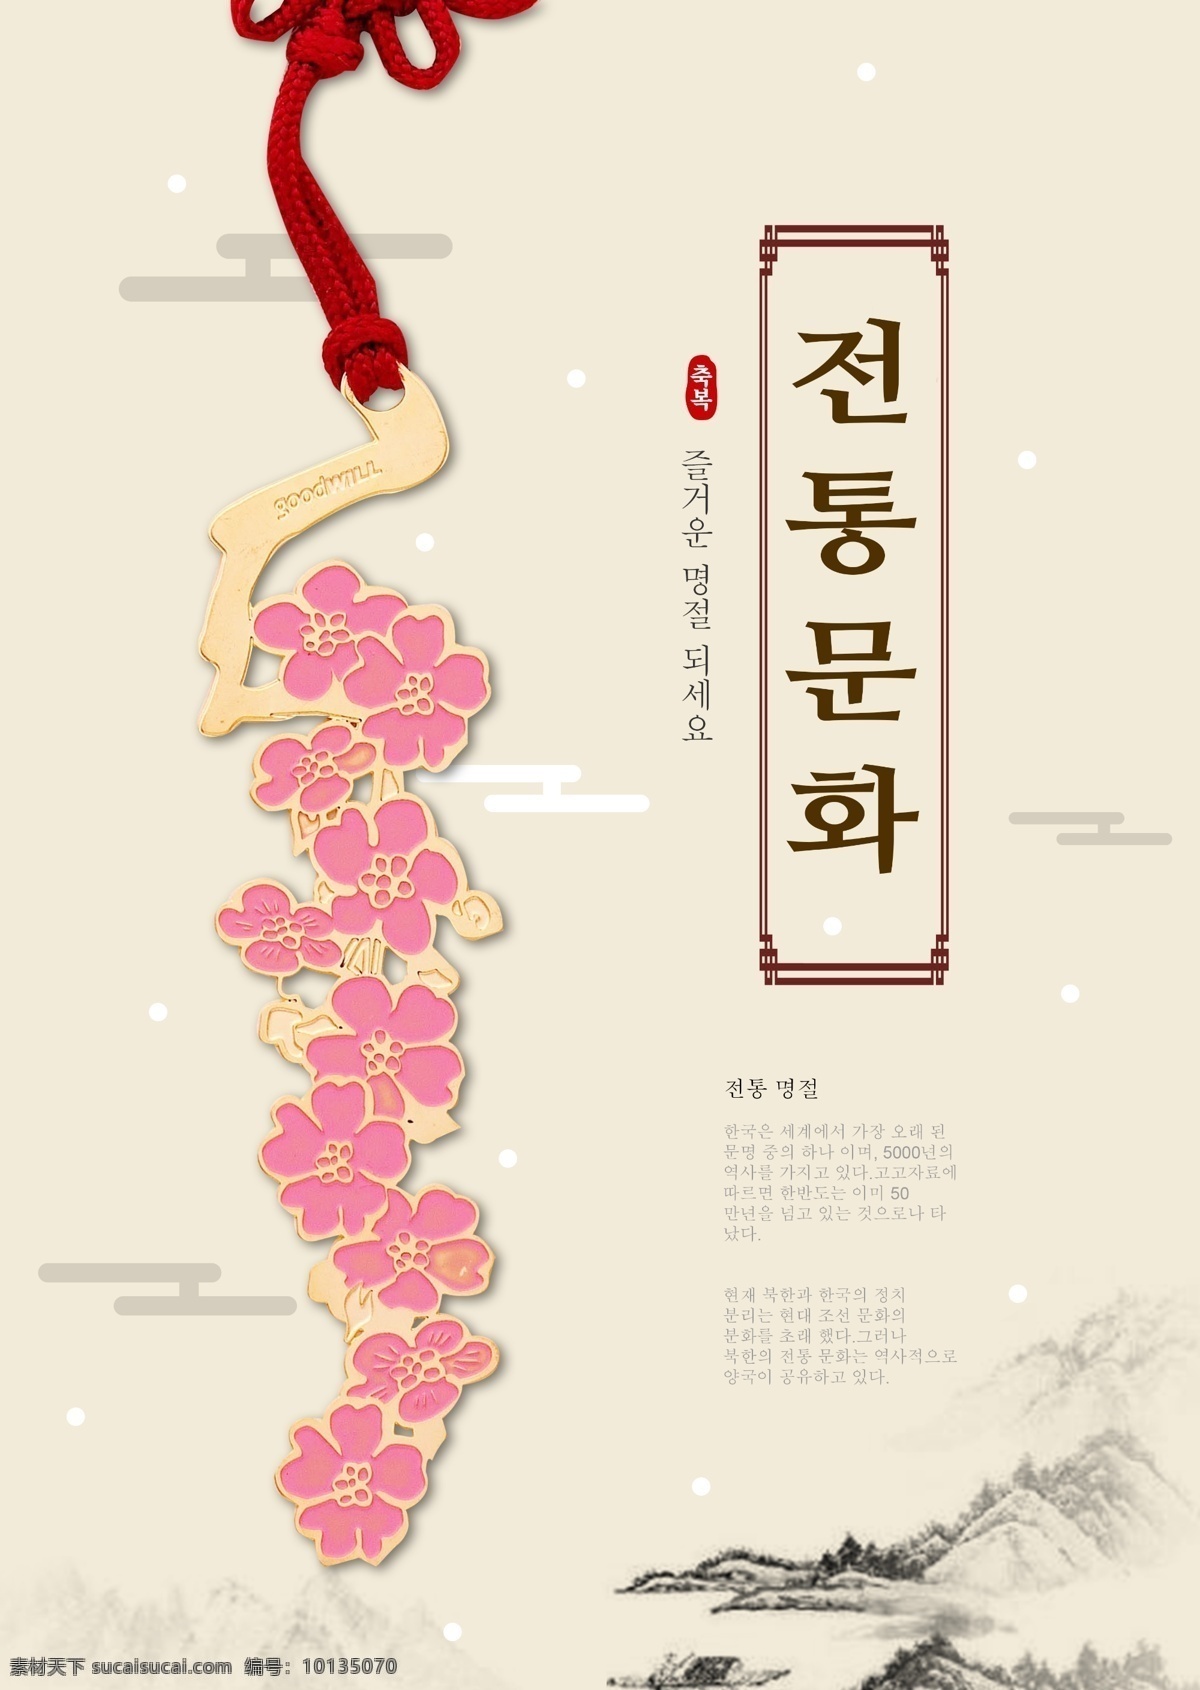 来自 韩国 梅花 节日 海报 灰色背景 节 红色 墨 景观 白头发的种子 结